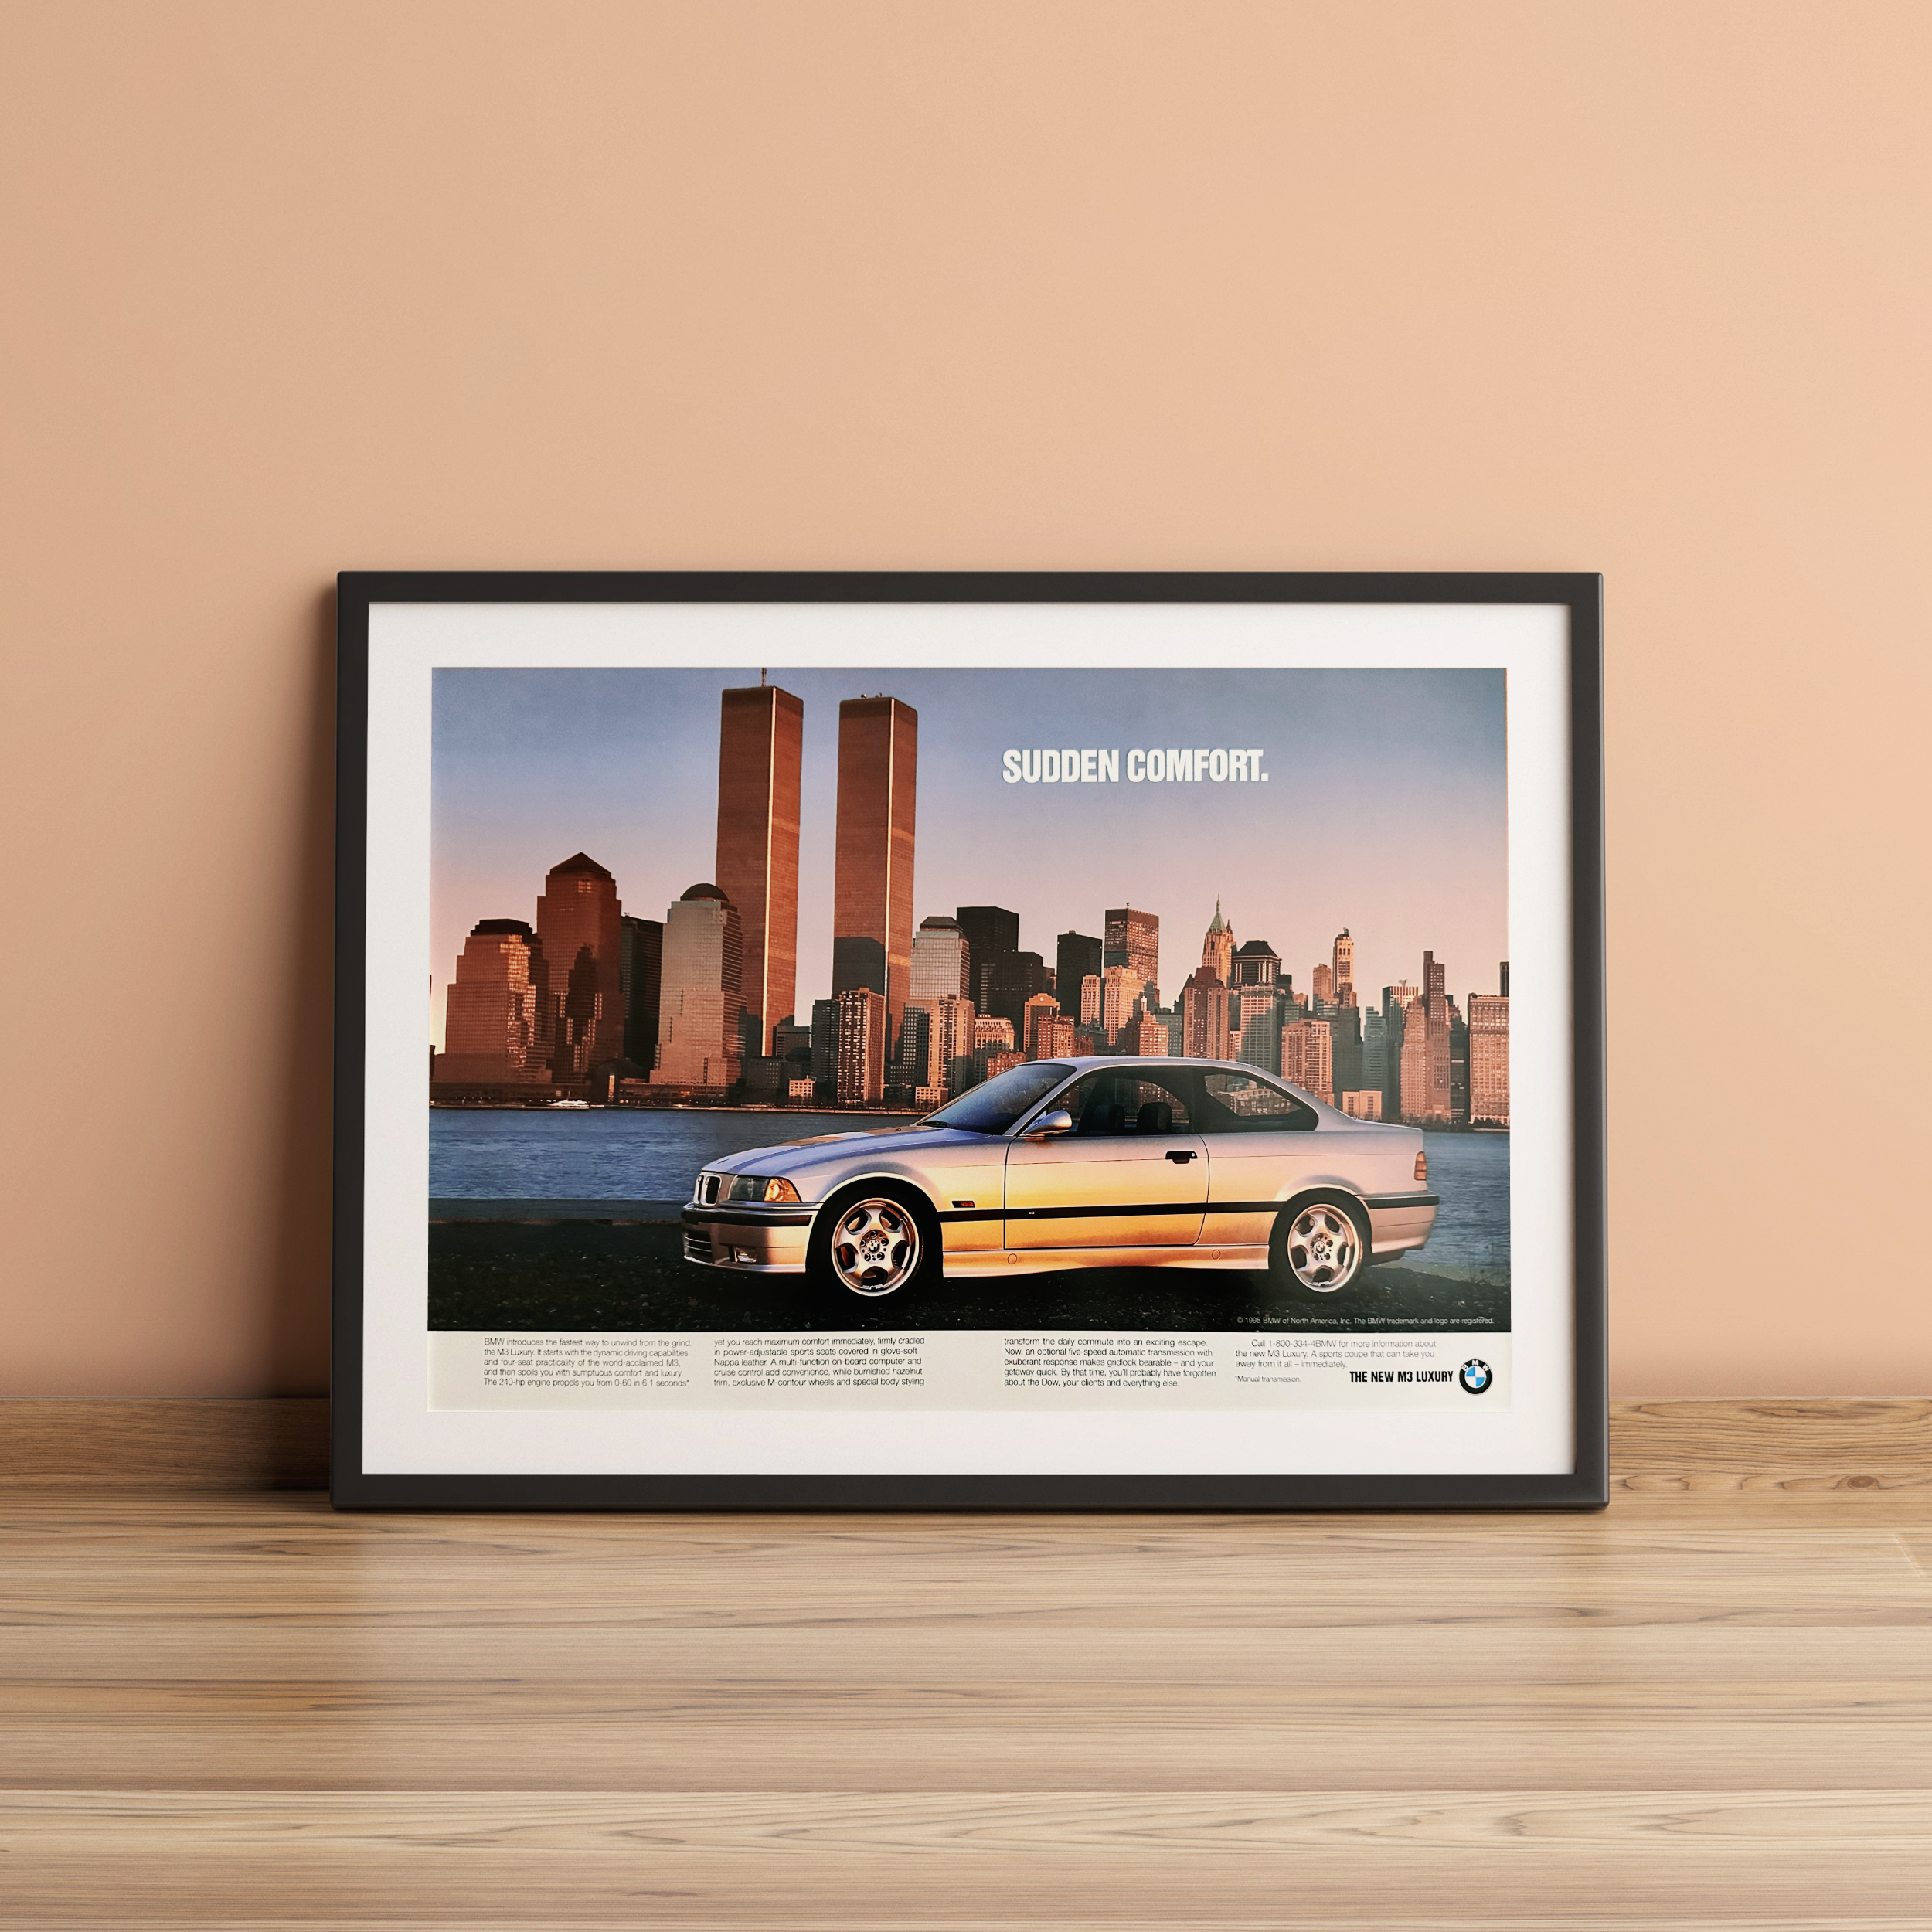 BMW E36 M3 Sudden Comfort Poster – BIMMERtips.com